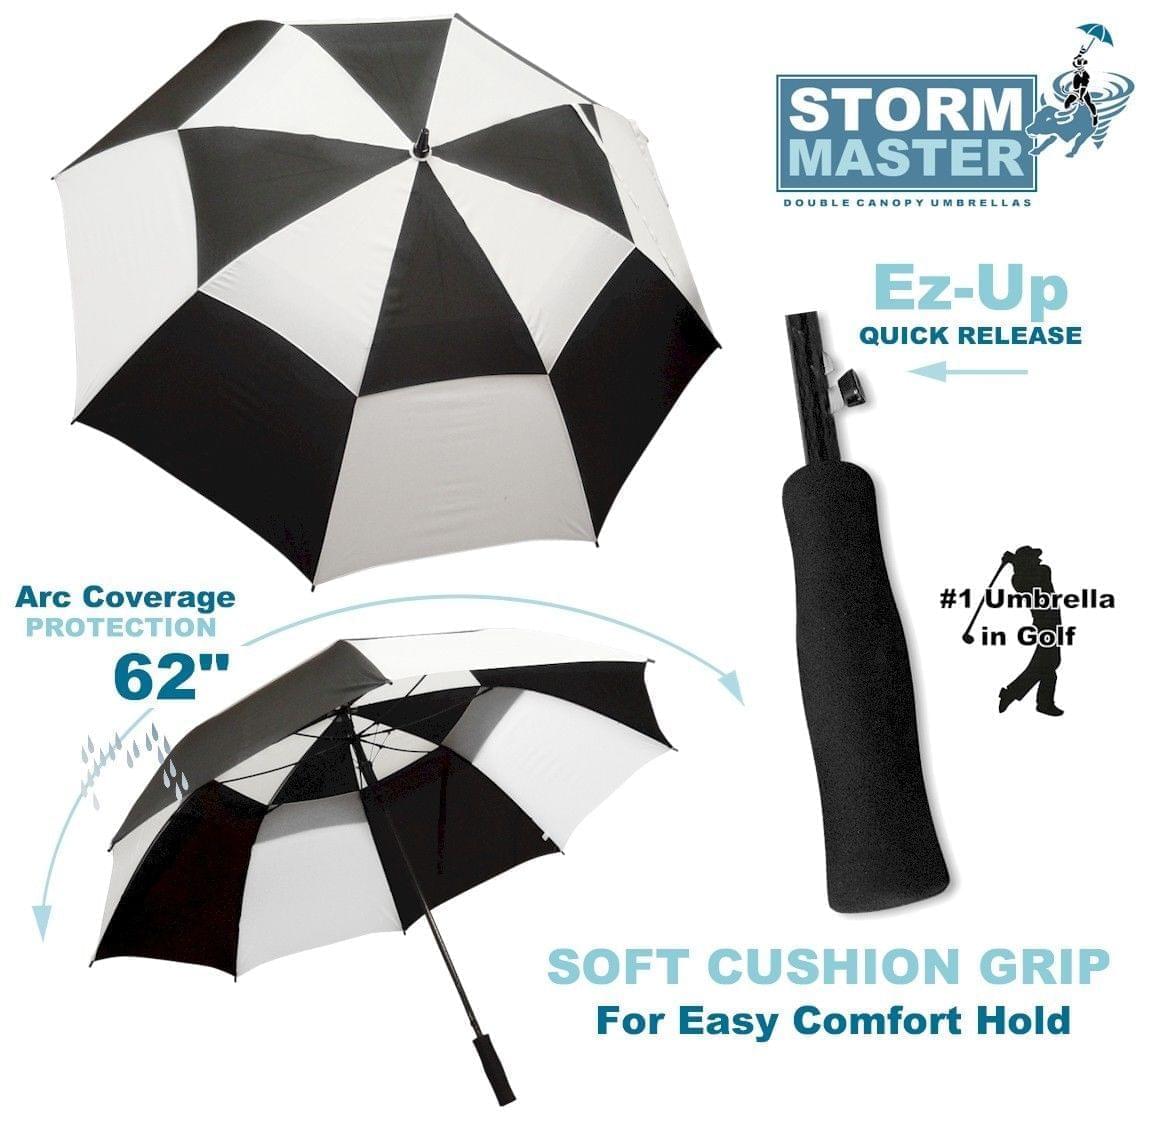 Single Canopy Auto Open Golf Umbrella by Player Supreme